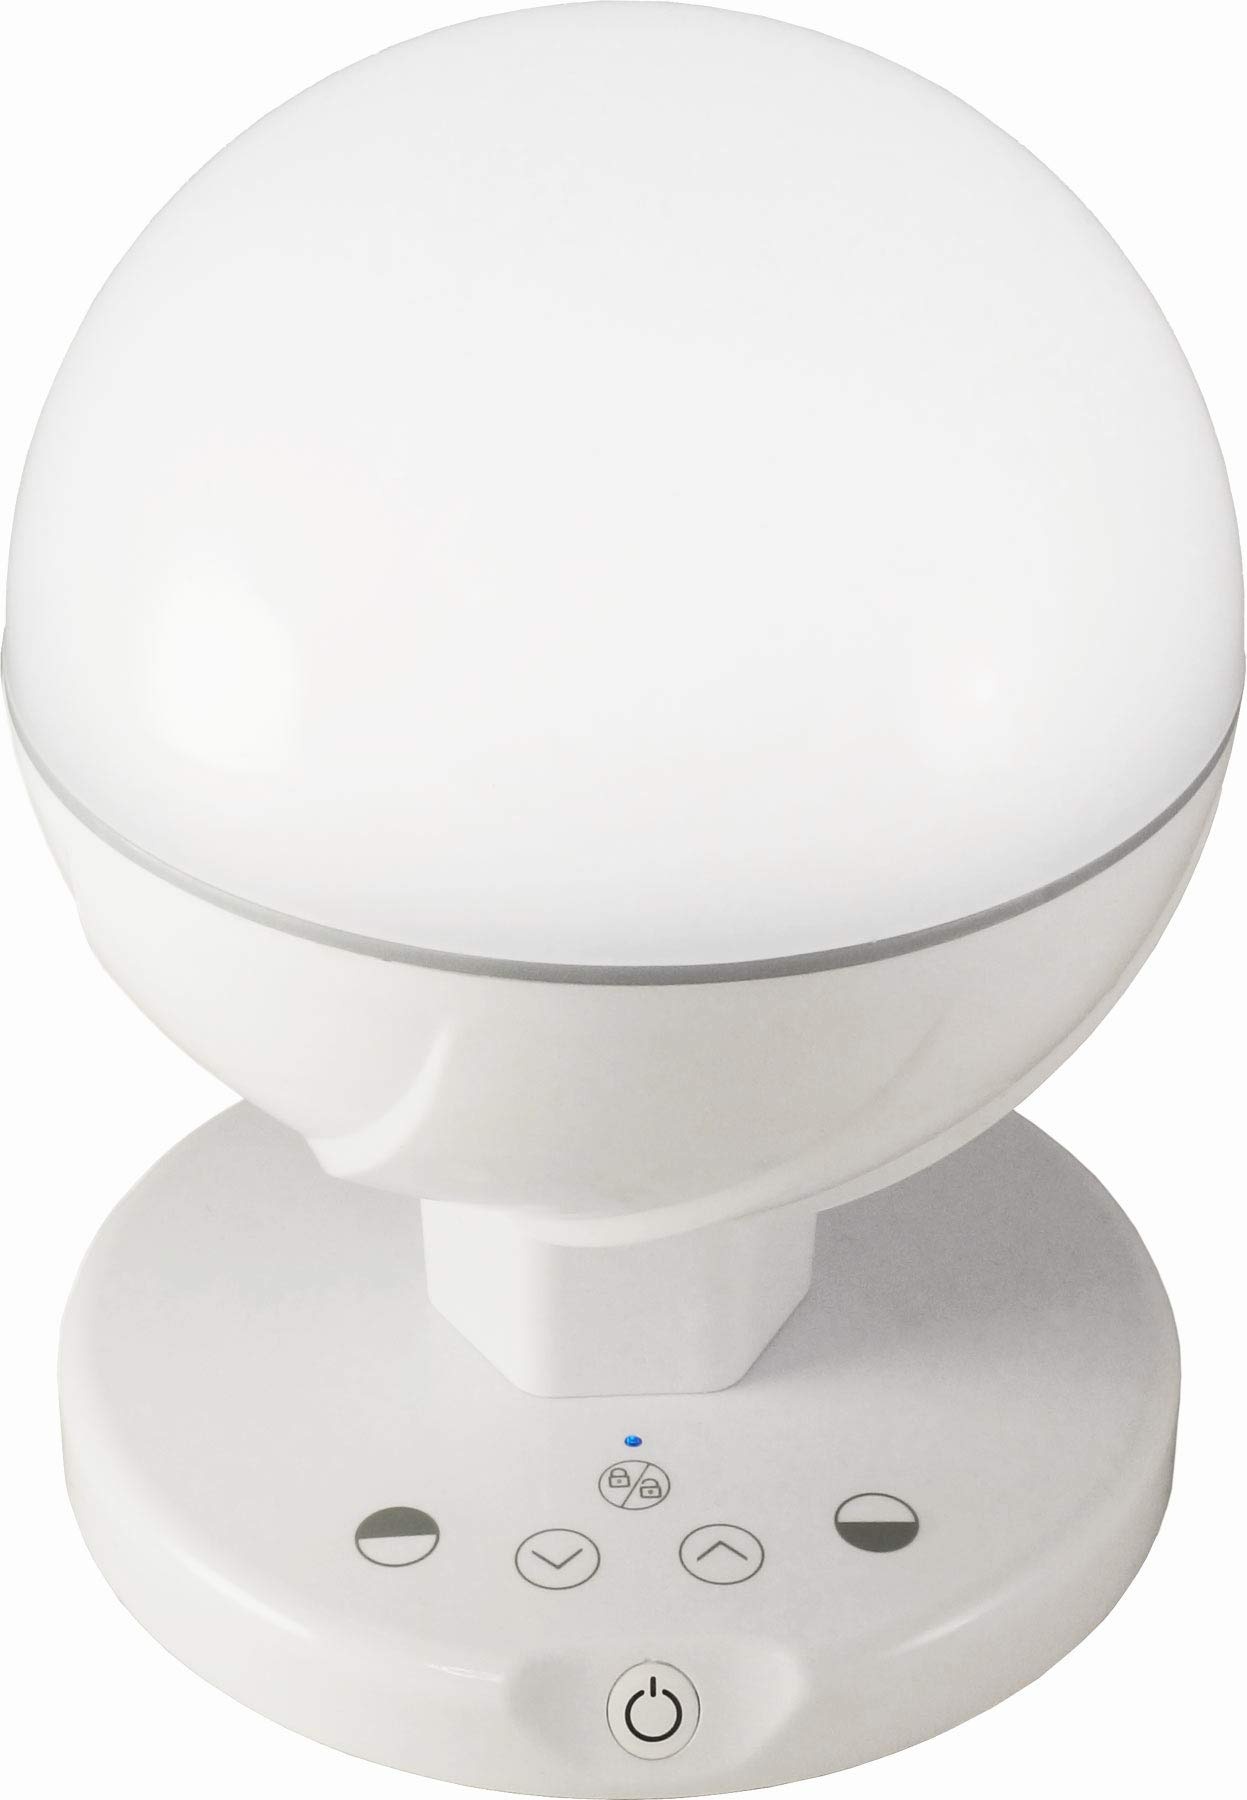 FeinTech Portable LED Lampe Nachtlicht Tisch-Leuchte Akku USB Dimmbar Kabellos LTL00201 Weiß